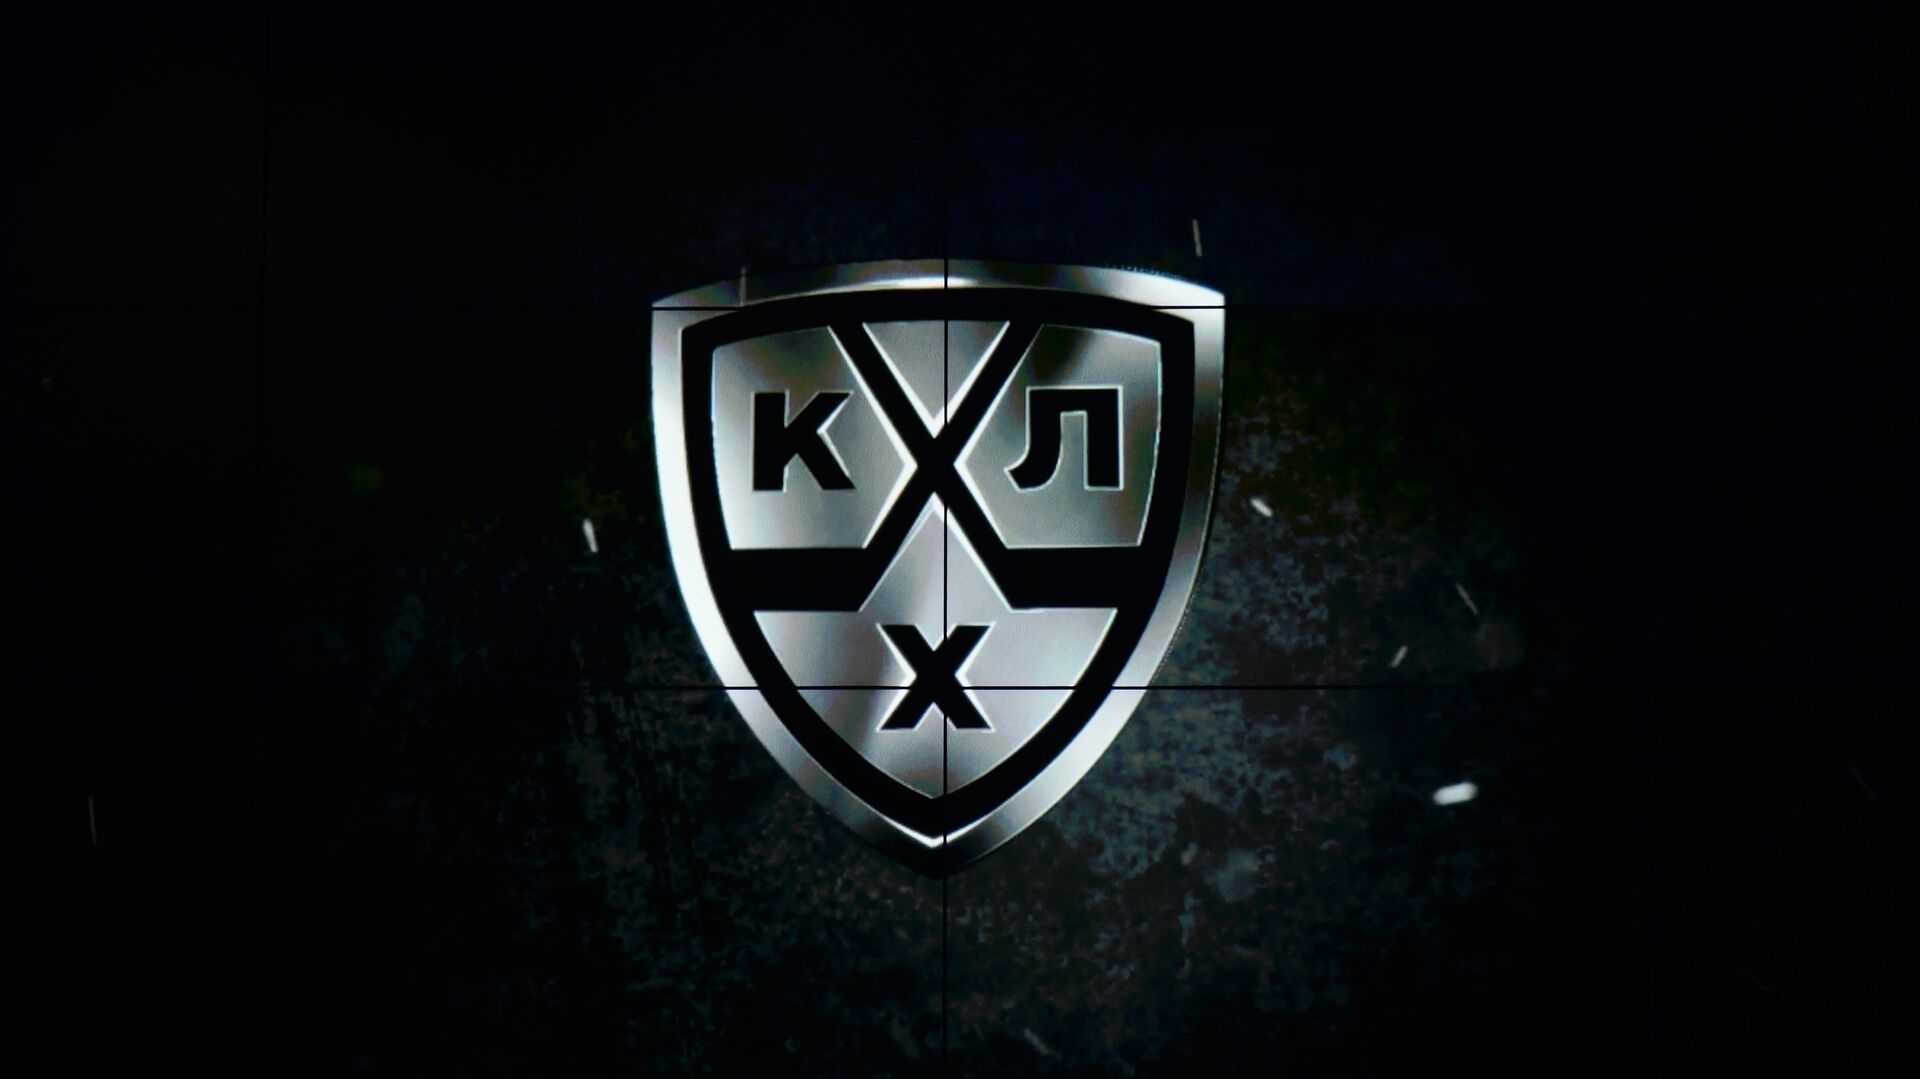 Логотип Континентальной хоккейной лиги (КХЛ) - РИА Новости, 1920, 24.09.2020